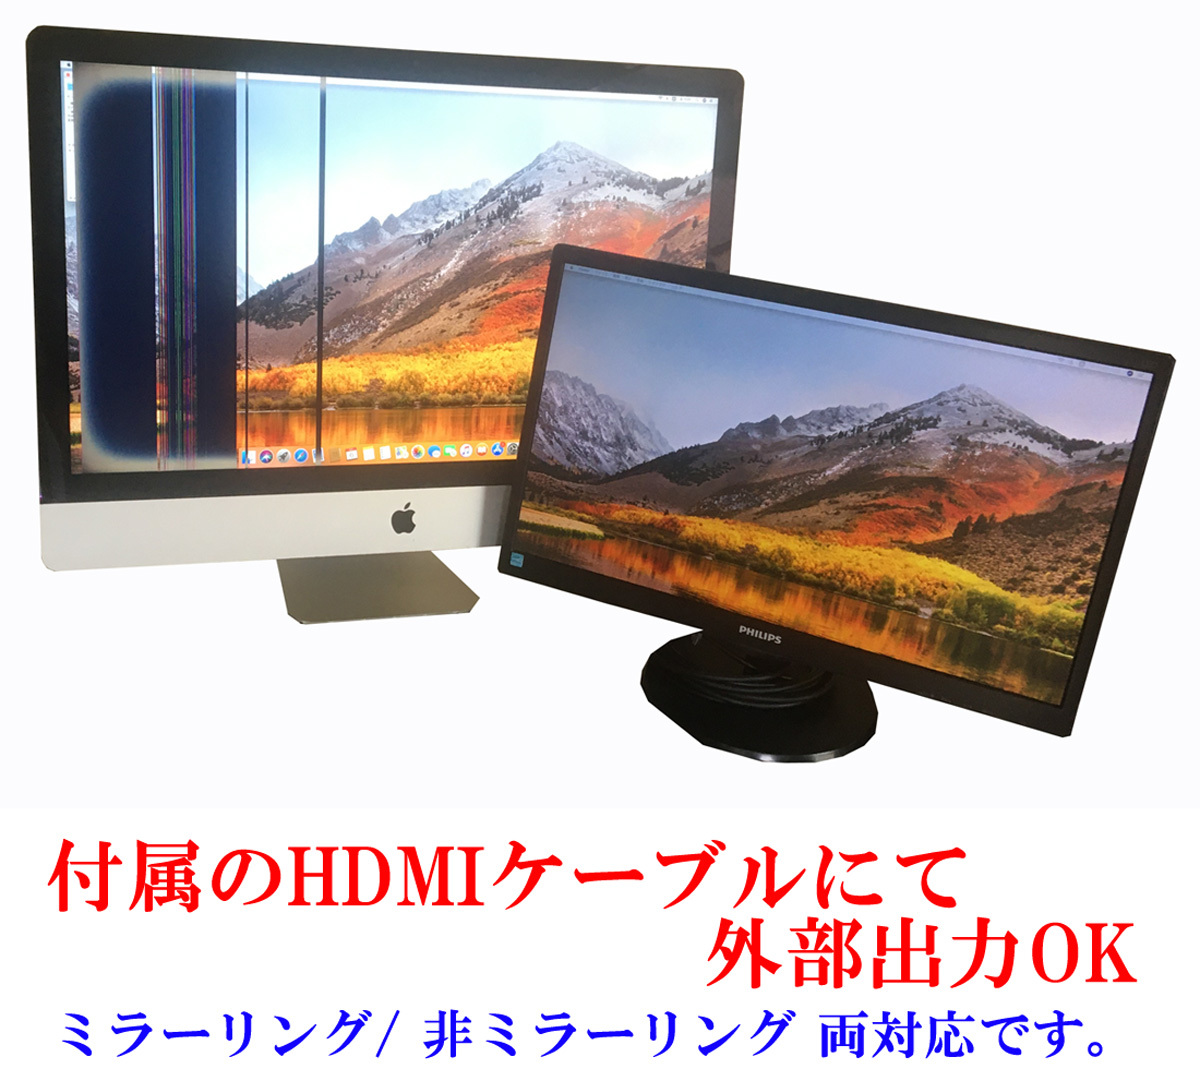 18476円 特価品コーナー☆ ■Apple■ iMac 27-inch Late 2012 Core i5 3.2GHz メモリ 16GB HDD 3TB Fusion Drive Catalina 10.15.7